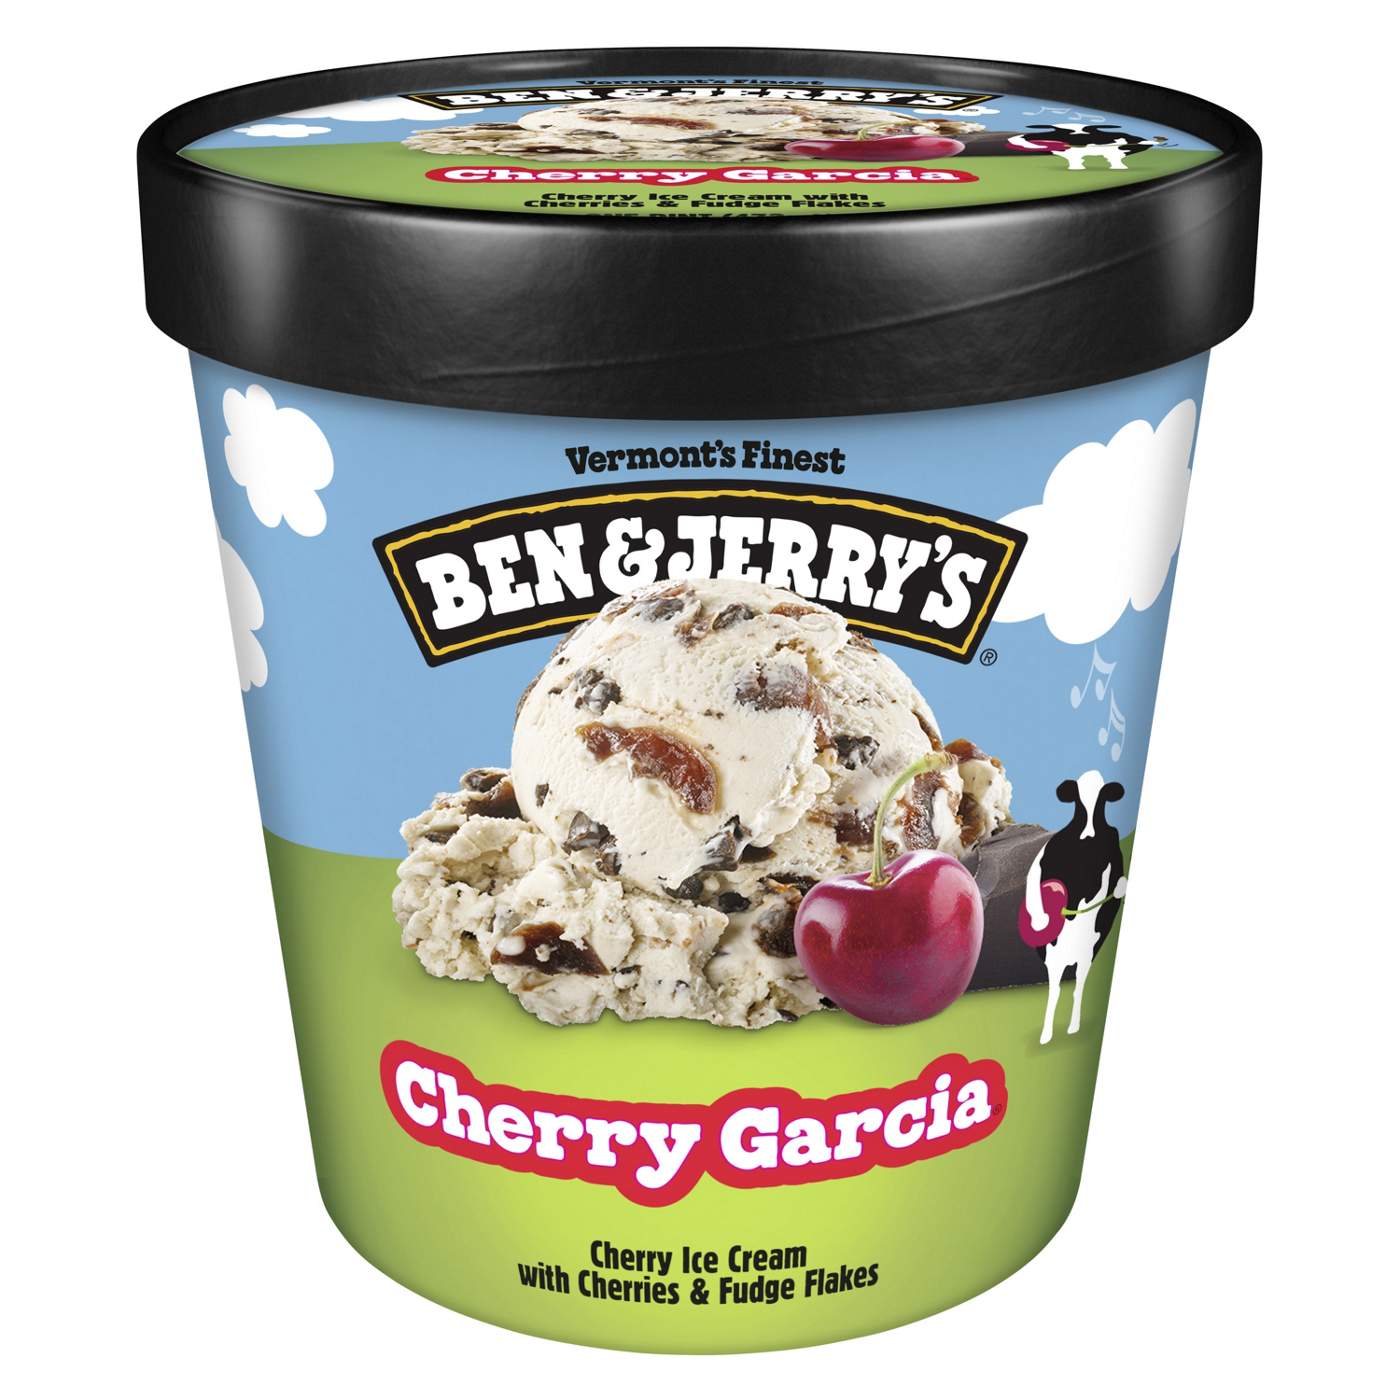 Ben & Jerry's Cherry Garcia Ice Cream; image 1 of 3